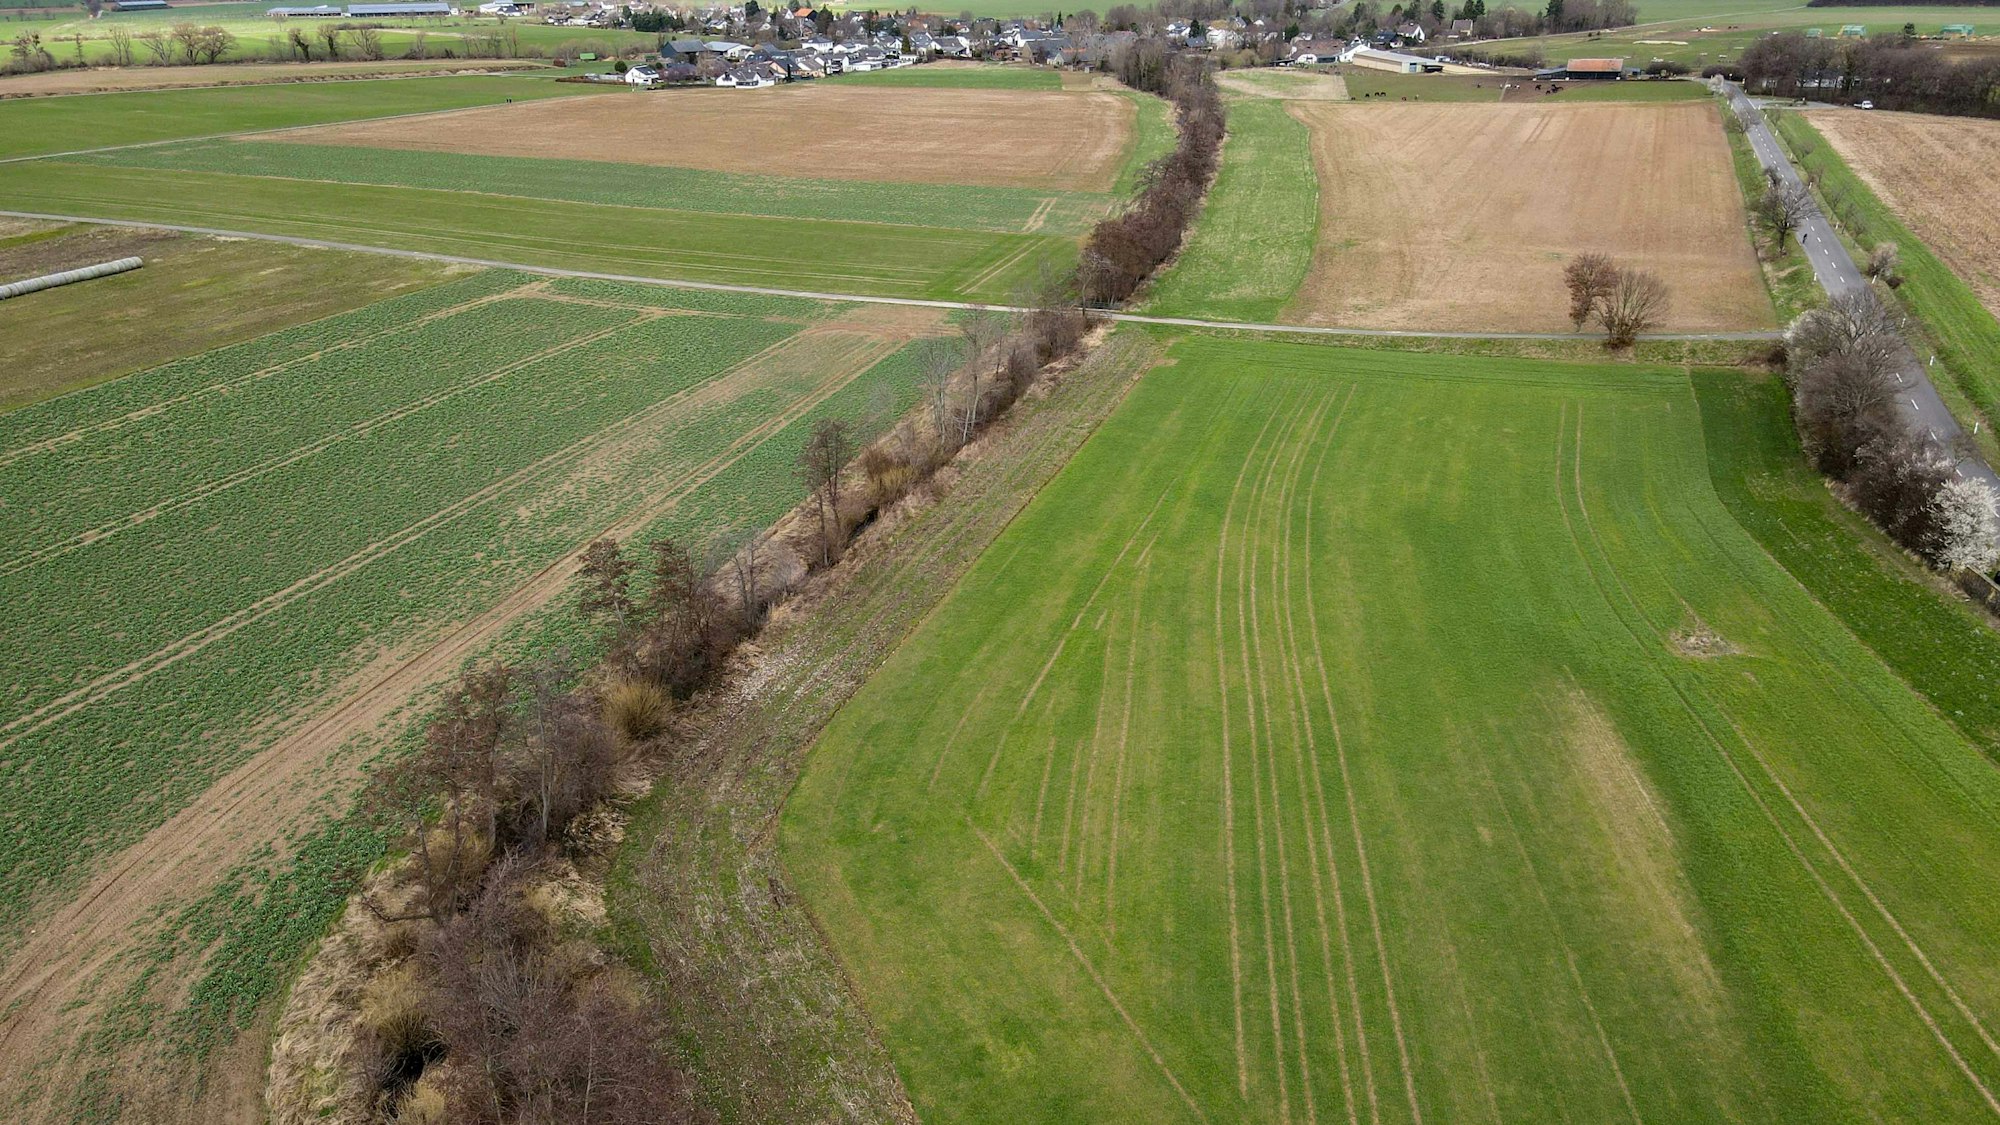 Das Bild zeigt den Ort, an dem der Erftverband vor Schweinheim ein Hochwasserrückhaltebecken errichten will. Es ist eine Aufnahme aus der Luft und zeigt eine Grünfläche.